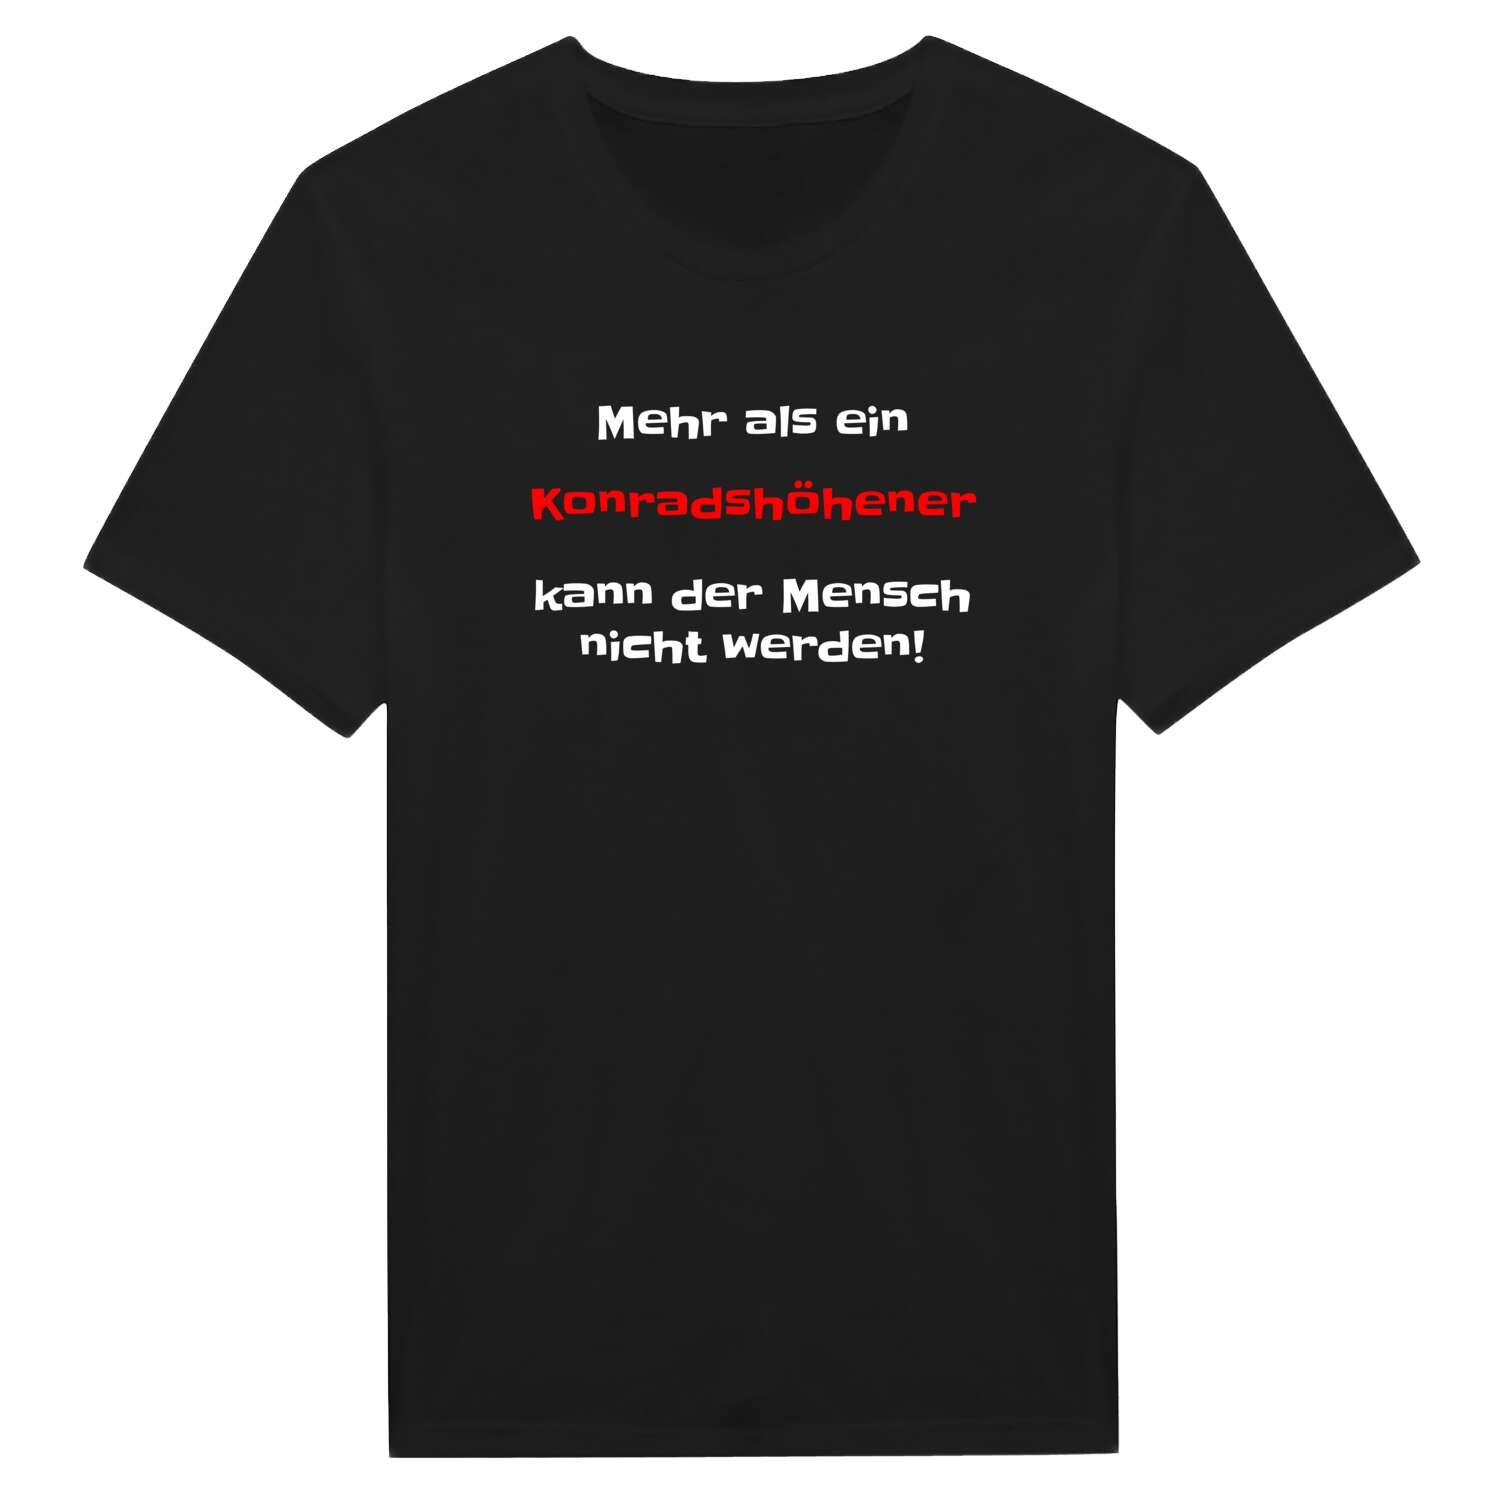 Konradshöhe T-Shirt »Mehr als ein«